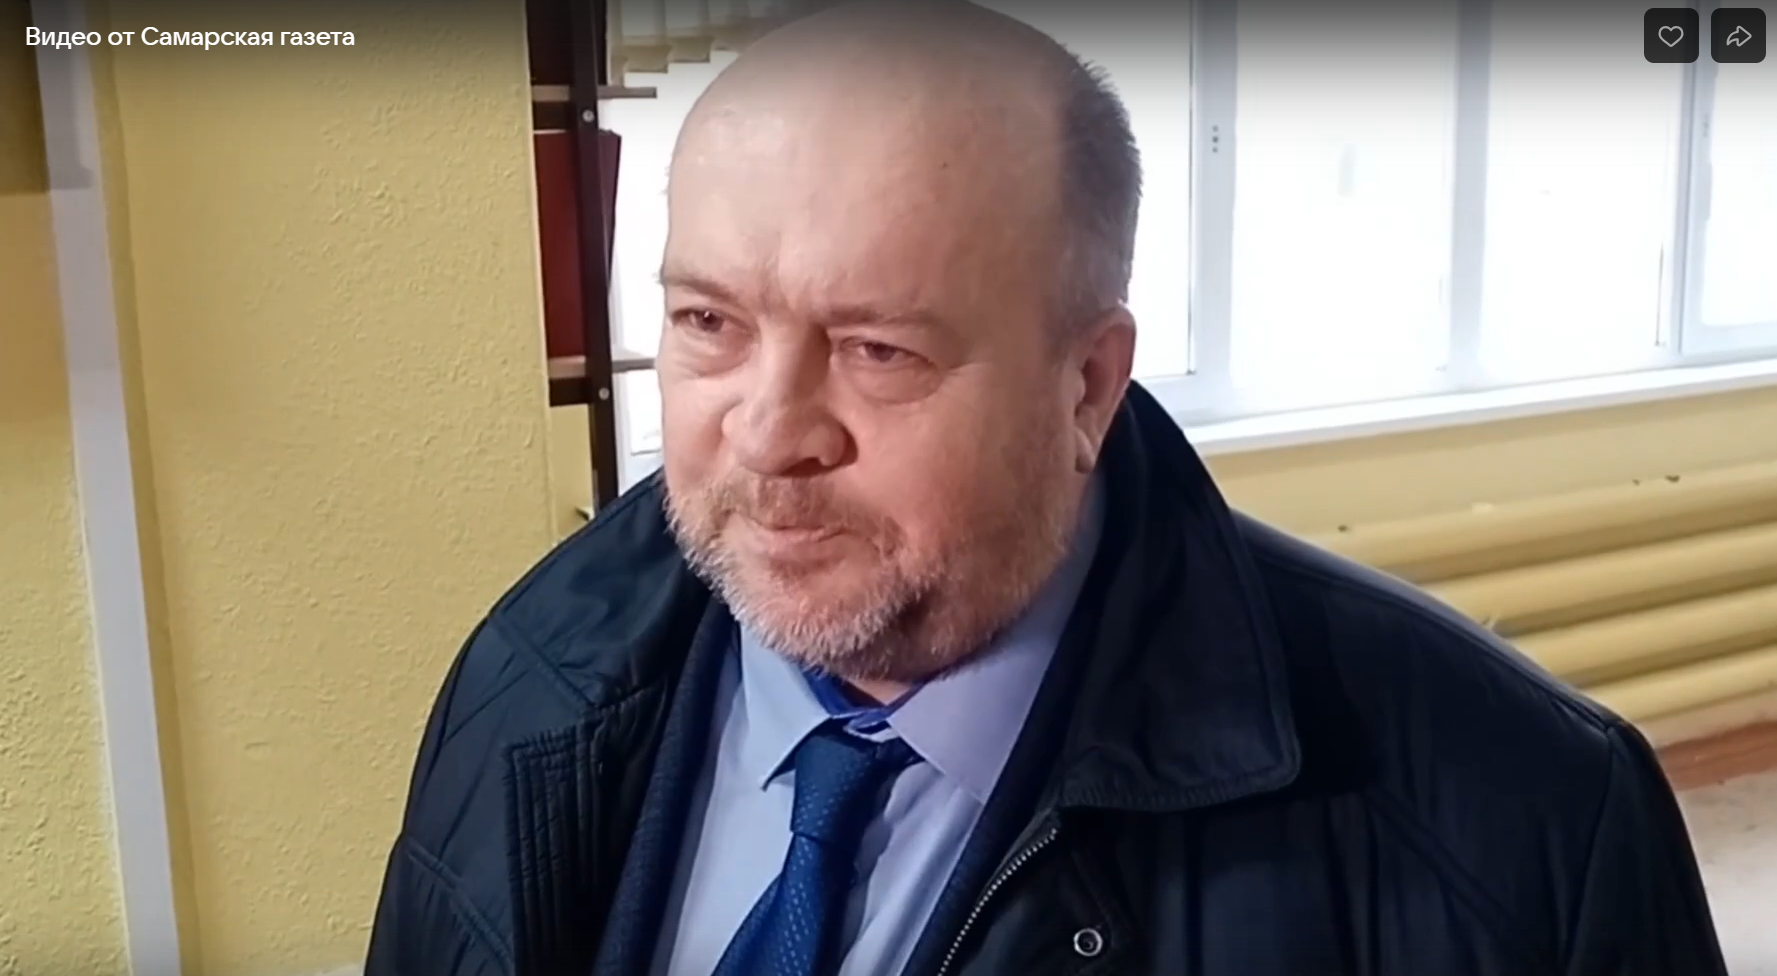 Председатель Самарской городской думы Алексей Дегтев проголосовал на выборах президента